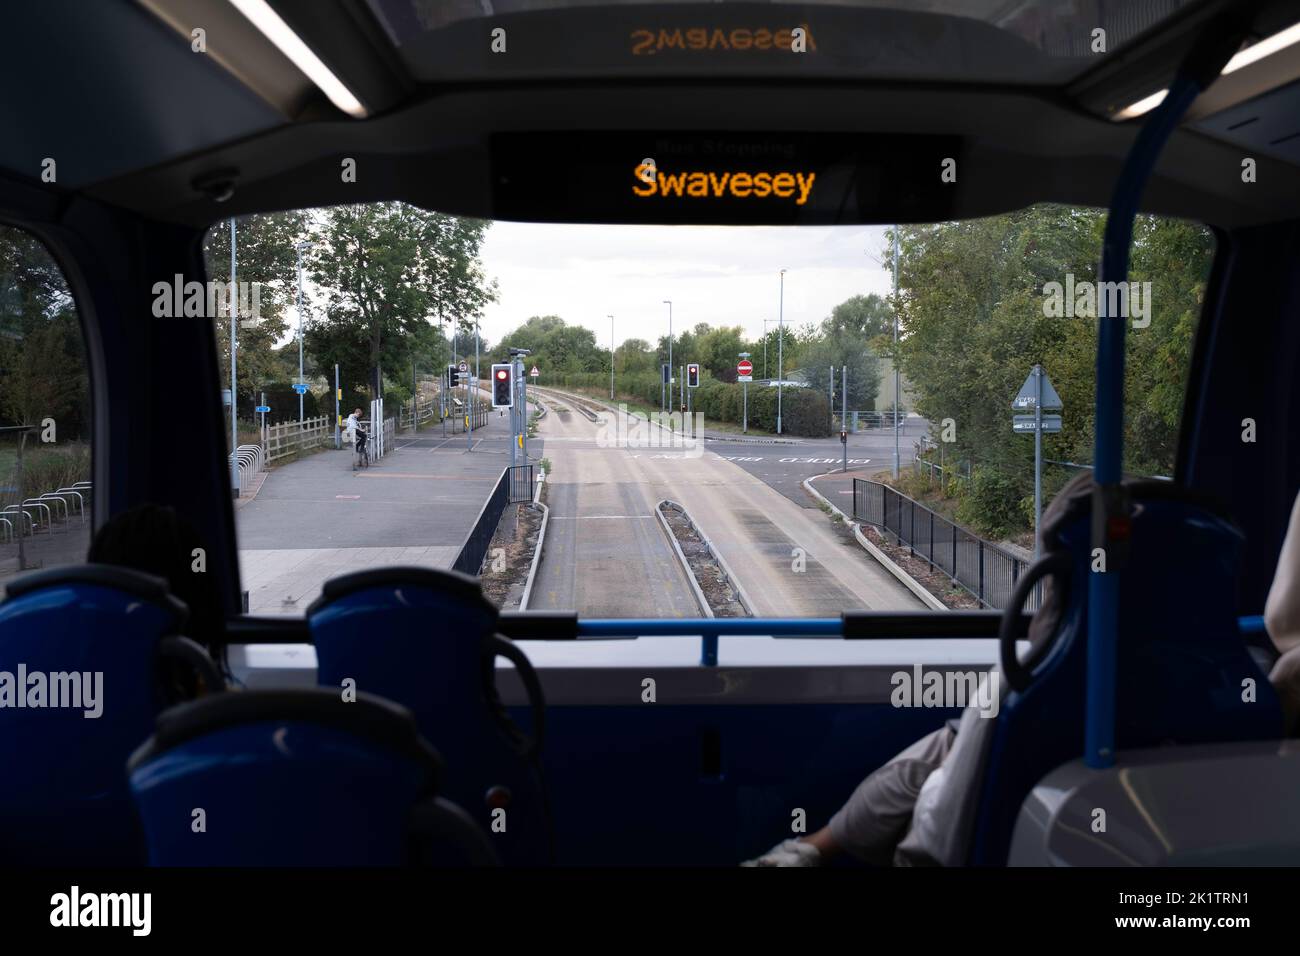 Vue à travers la fenêtre supérieure d'un bus à impériale Cambridgeshire depuis la ligne de bus guidée. Les voies d'acheminement sont clairement visibles à l'endroit où le bus doit se déplacer Banque D'Images